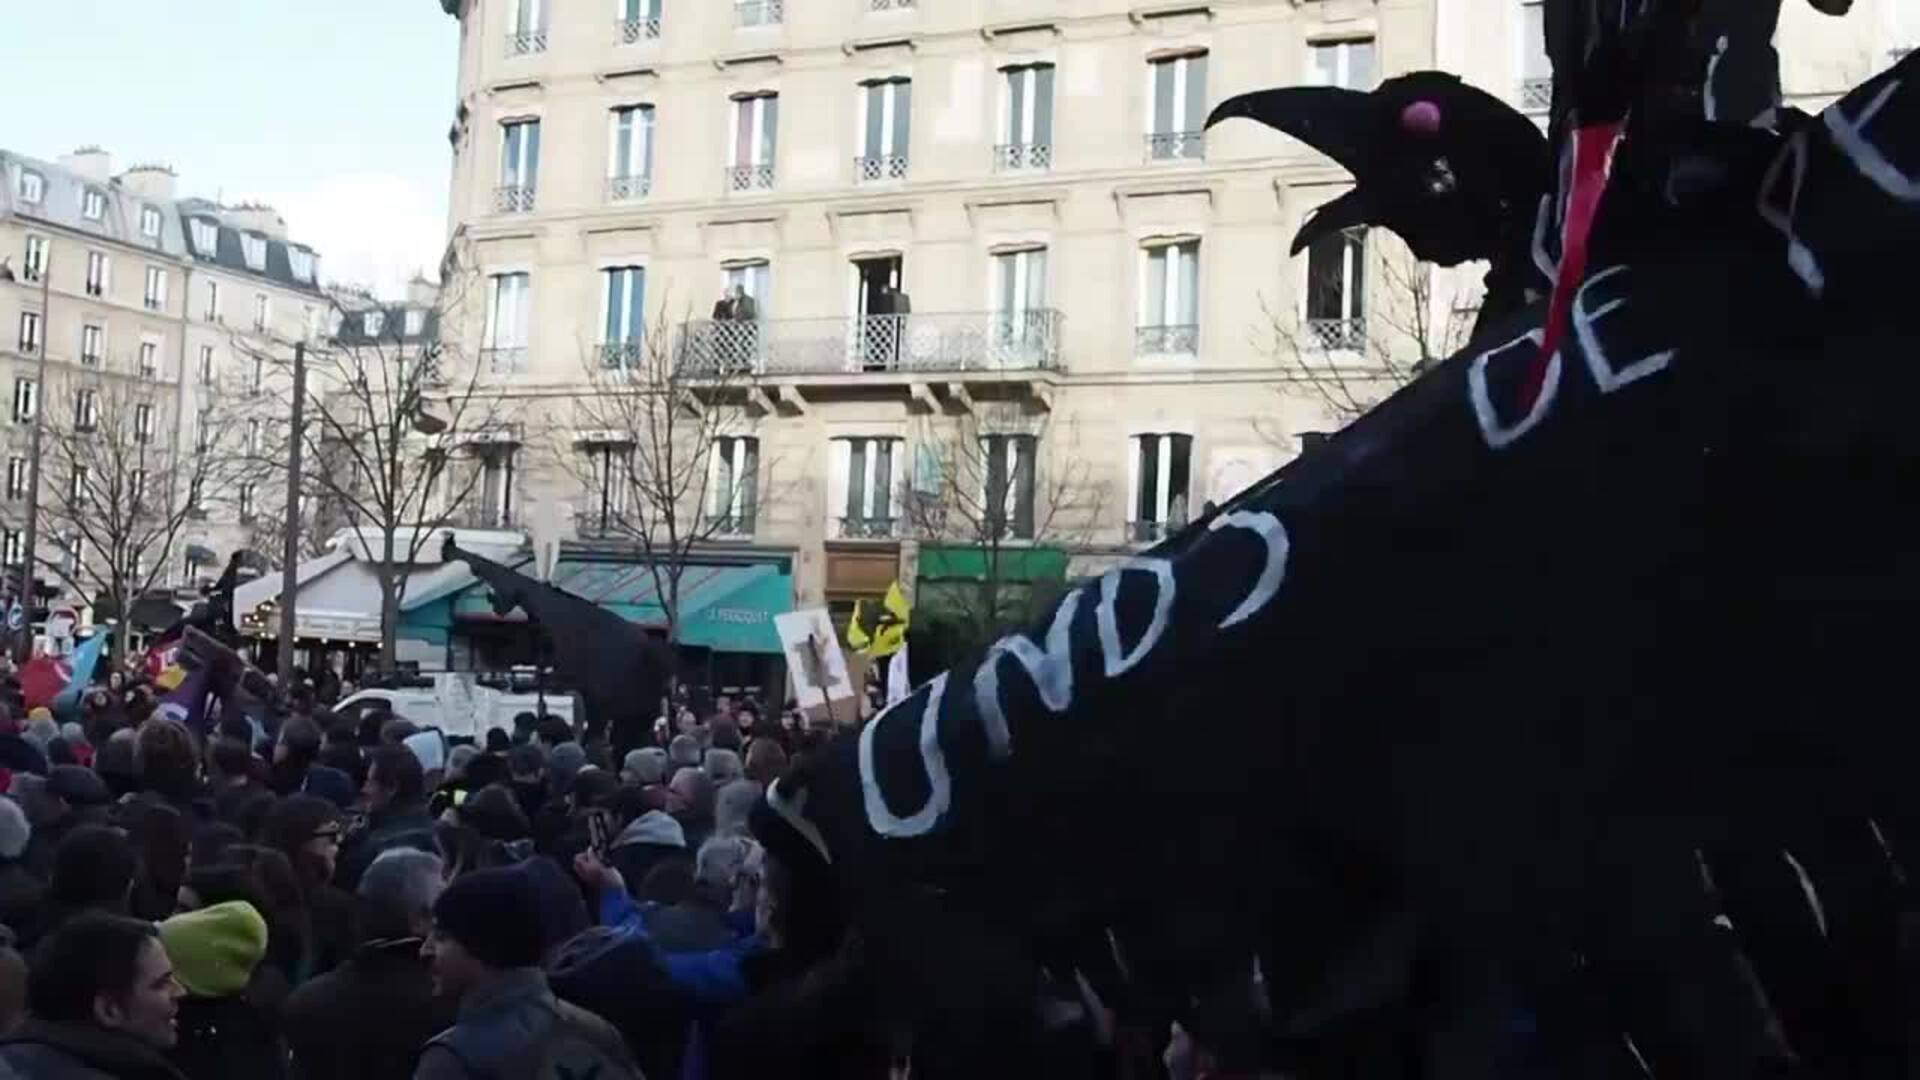 Más de 500.000 franceses se concentran en París en protesta por la reforma de las pensiones